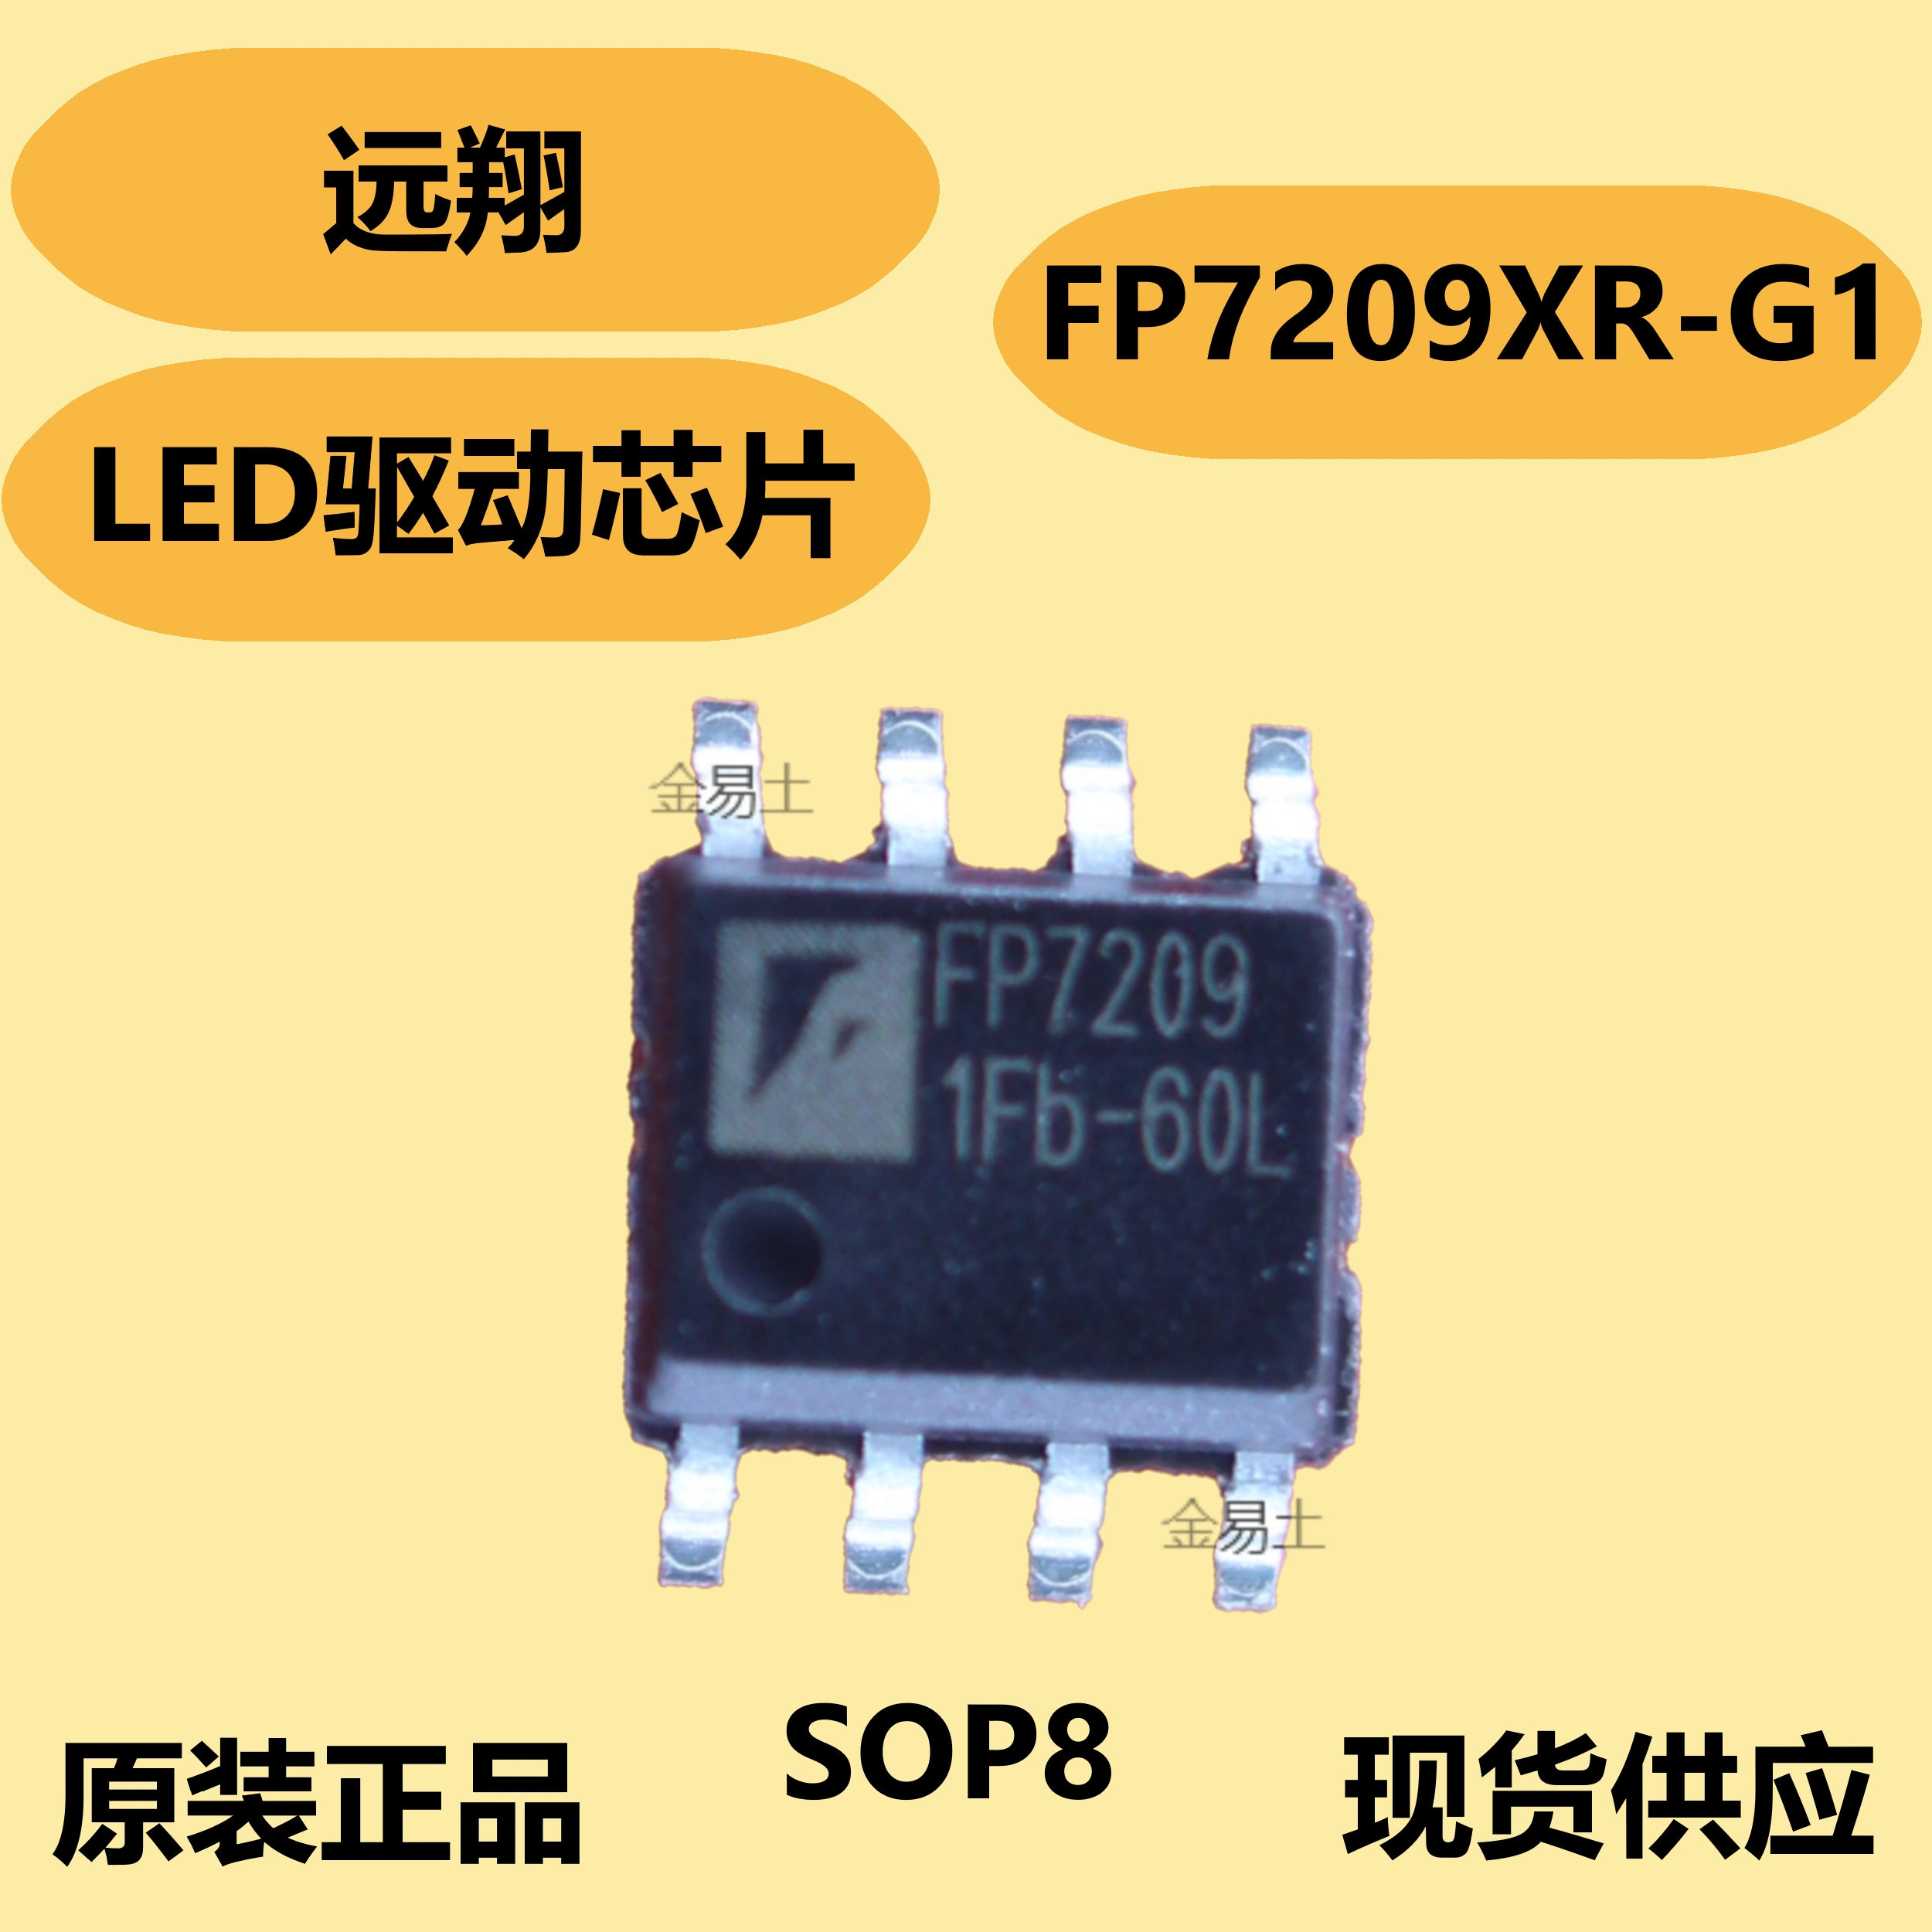 Chip FP7209XR-G1 chính hãng Yuanxiang, gói SOP8, điều khiển làm mờ analog và kỹ thuật số chức năng ic 7493 chức năng ic 555